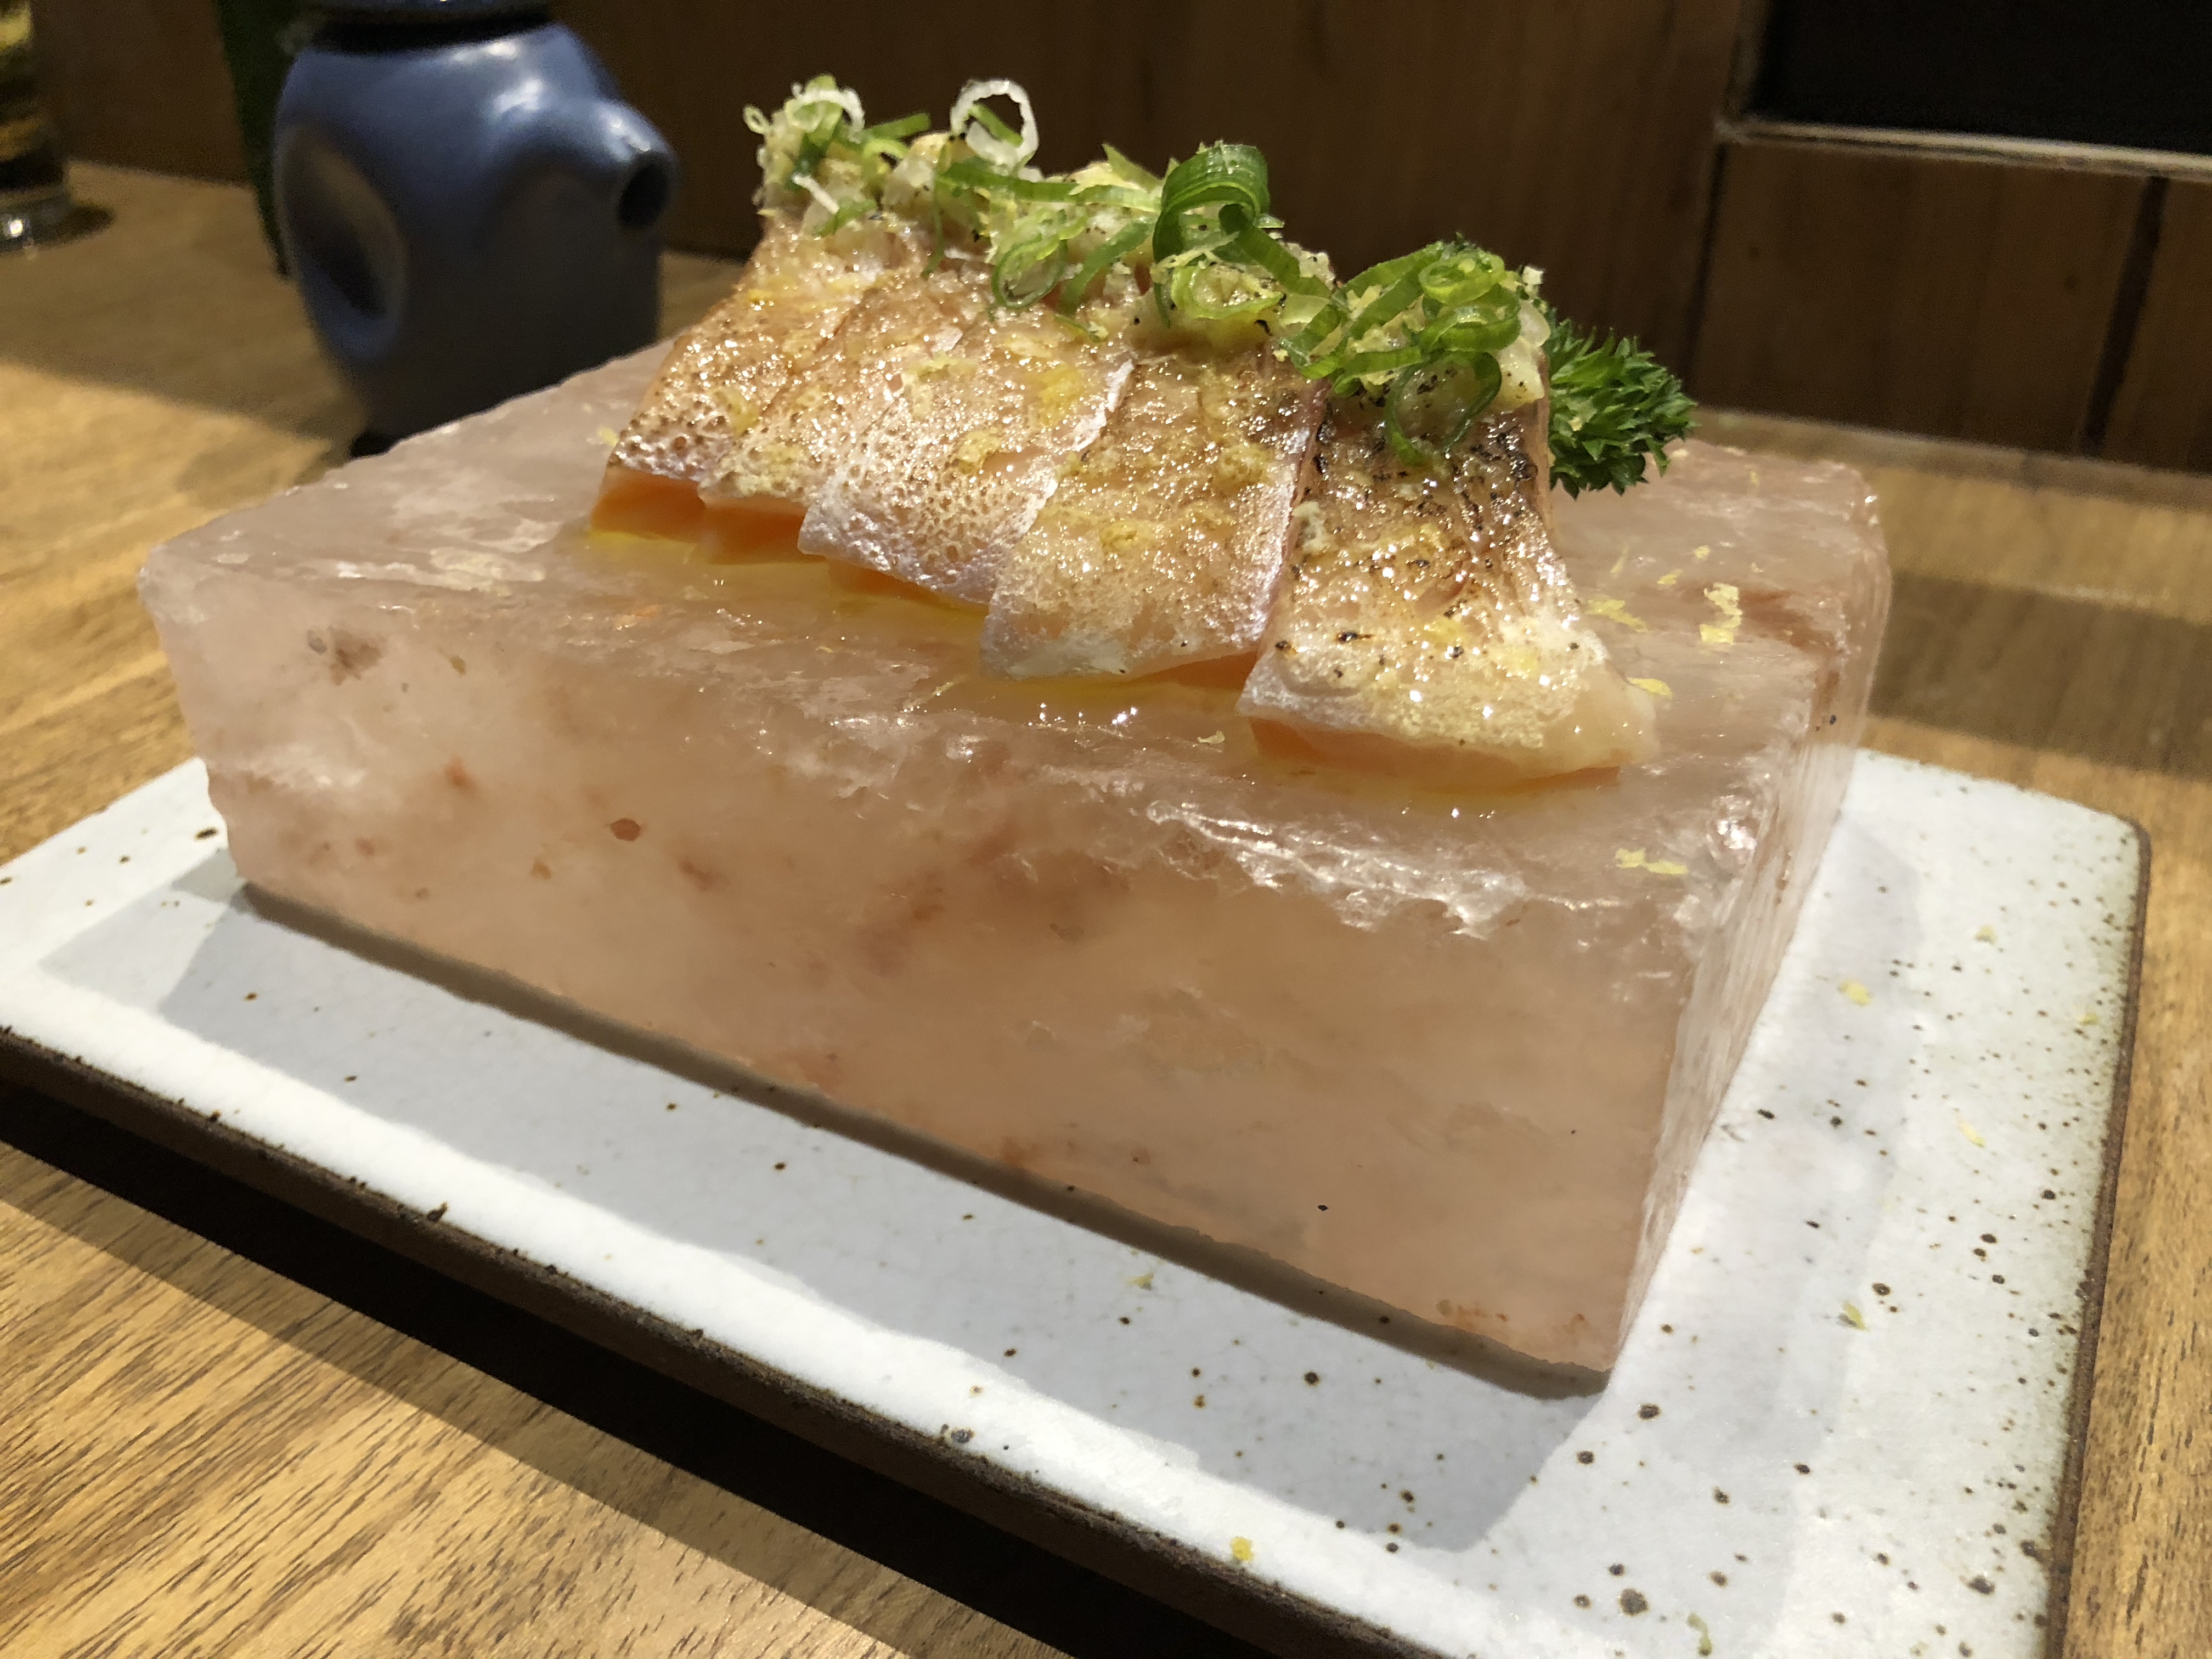 Kozu restaurante serve sushis e sashimis na pedra de sal rosa | Foto: Luísa Gomes/Mais Cinco